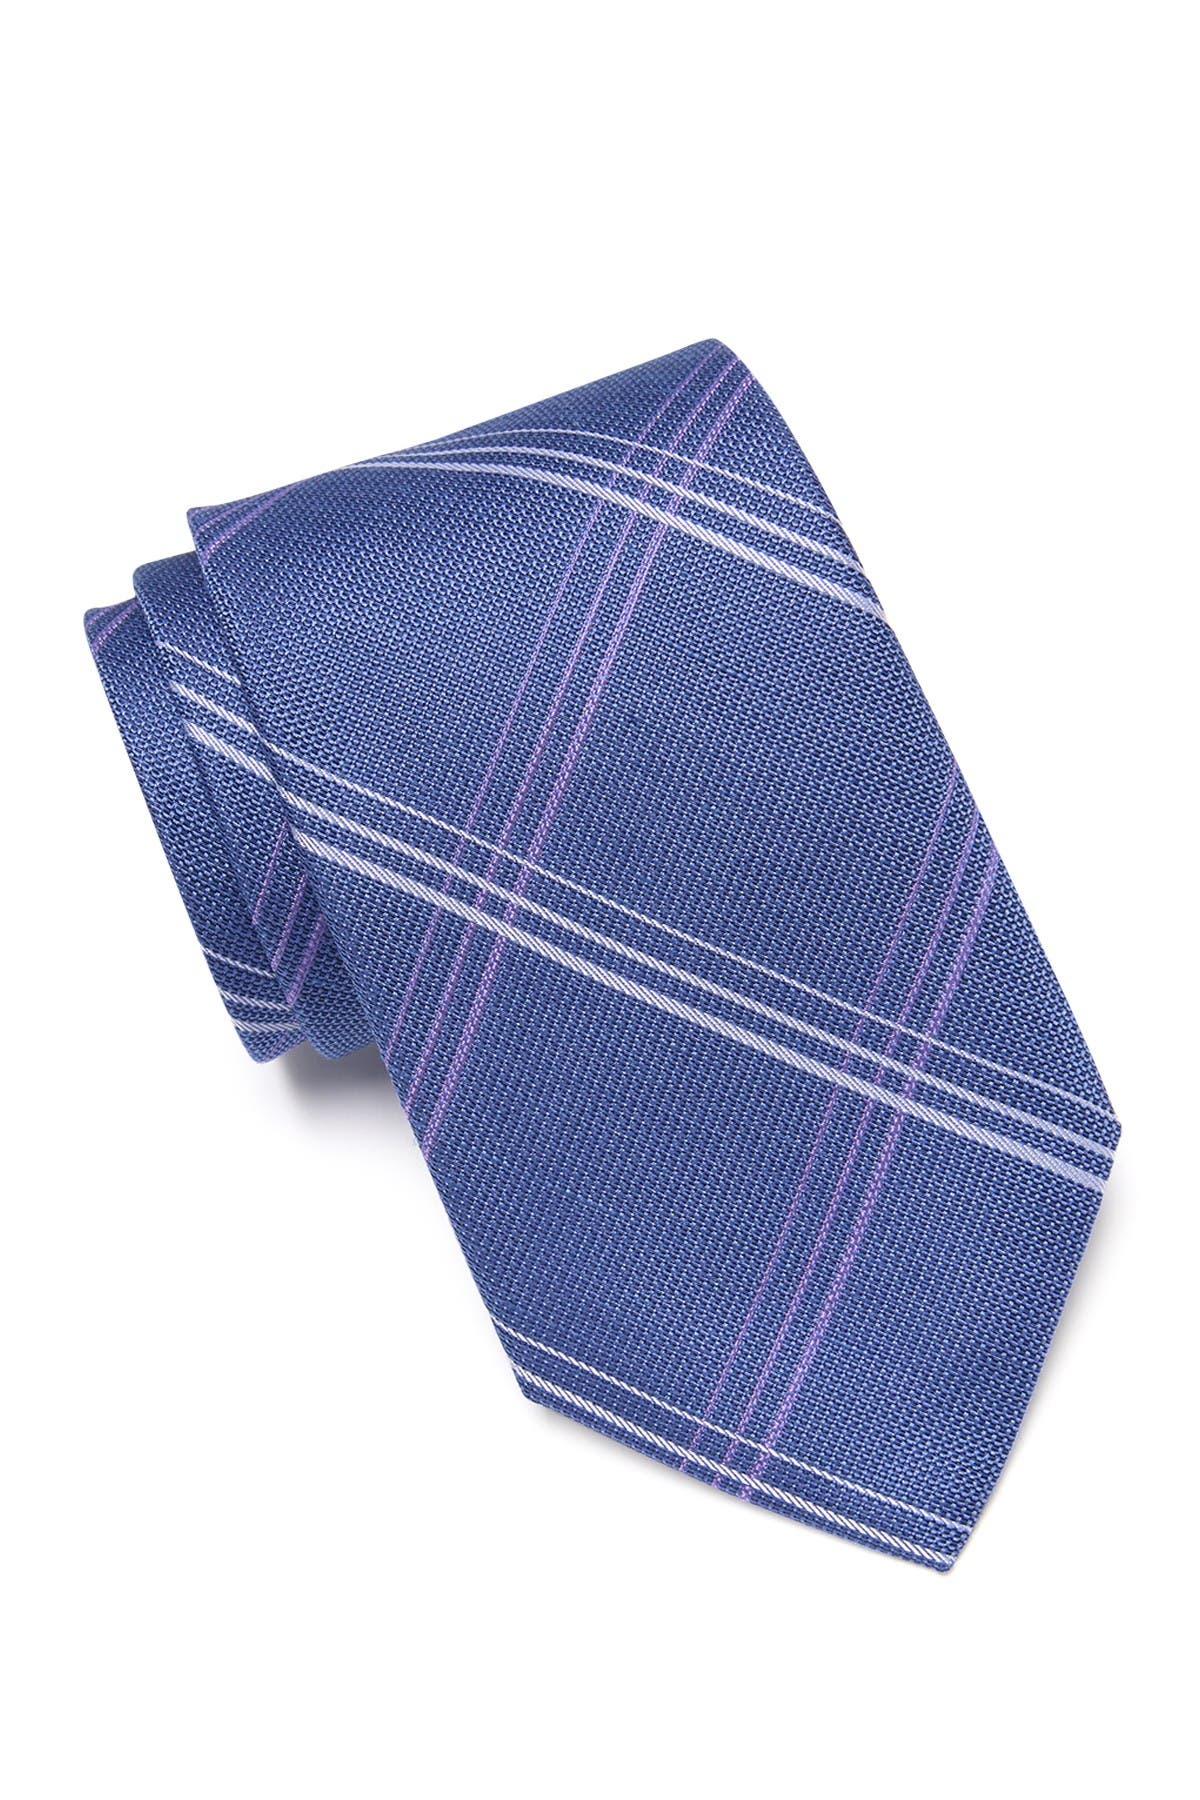 michael kors neckties